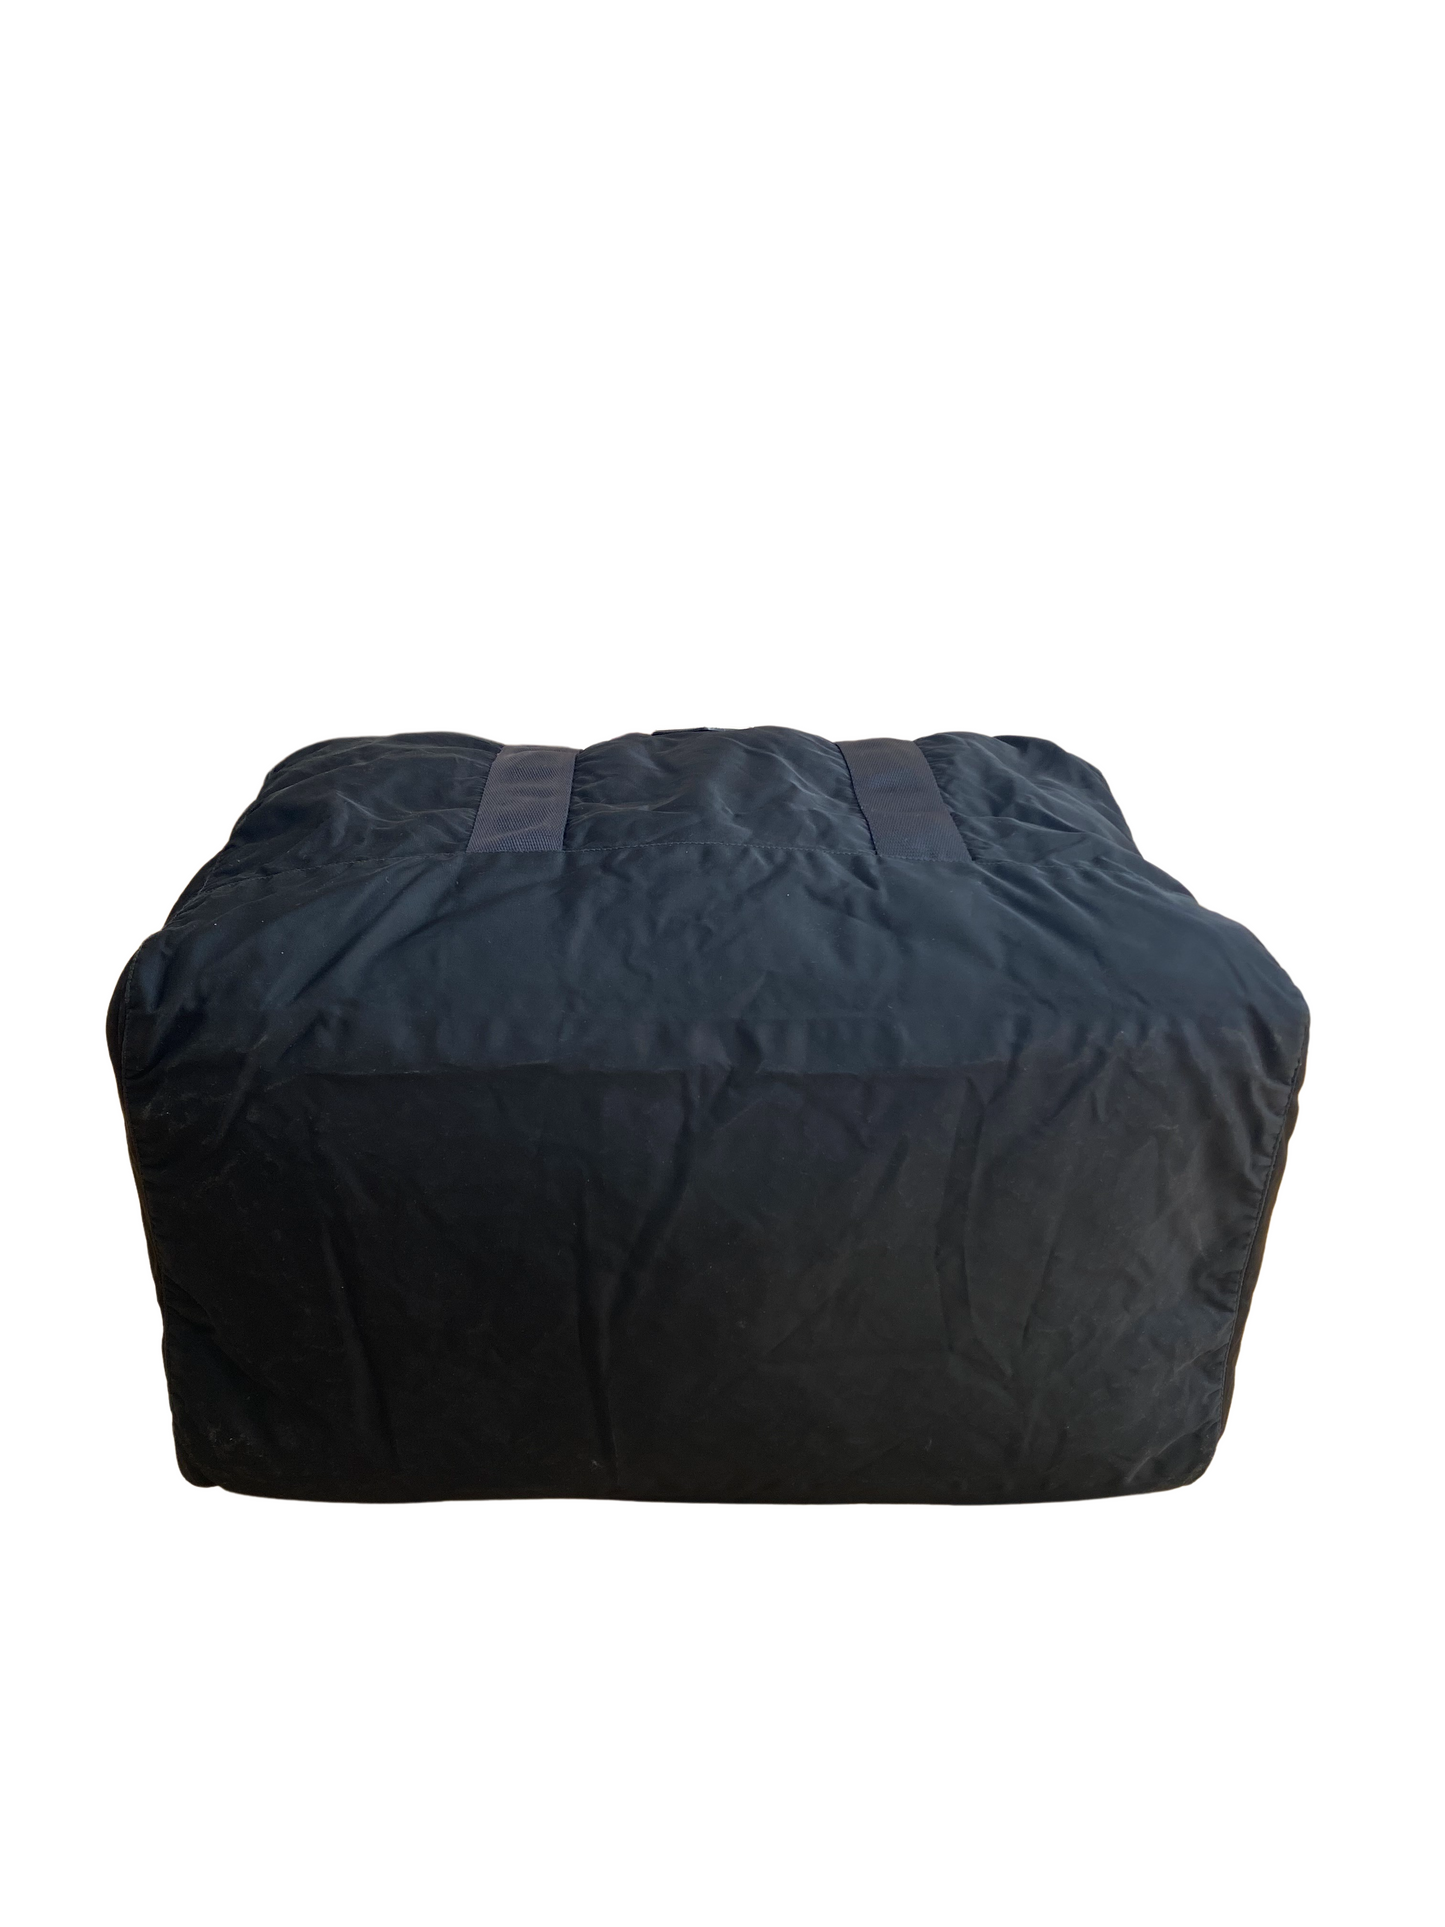 Prada Black Nylon Boston Bag